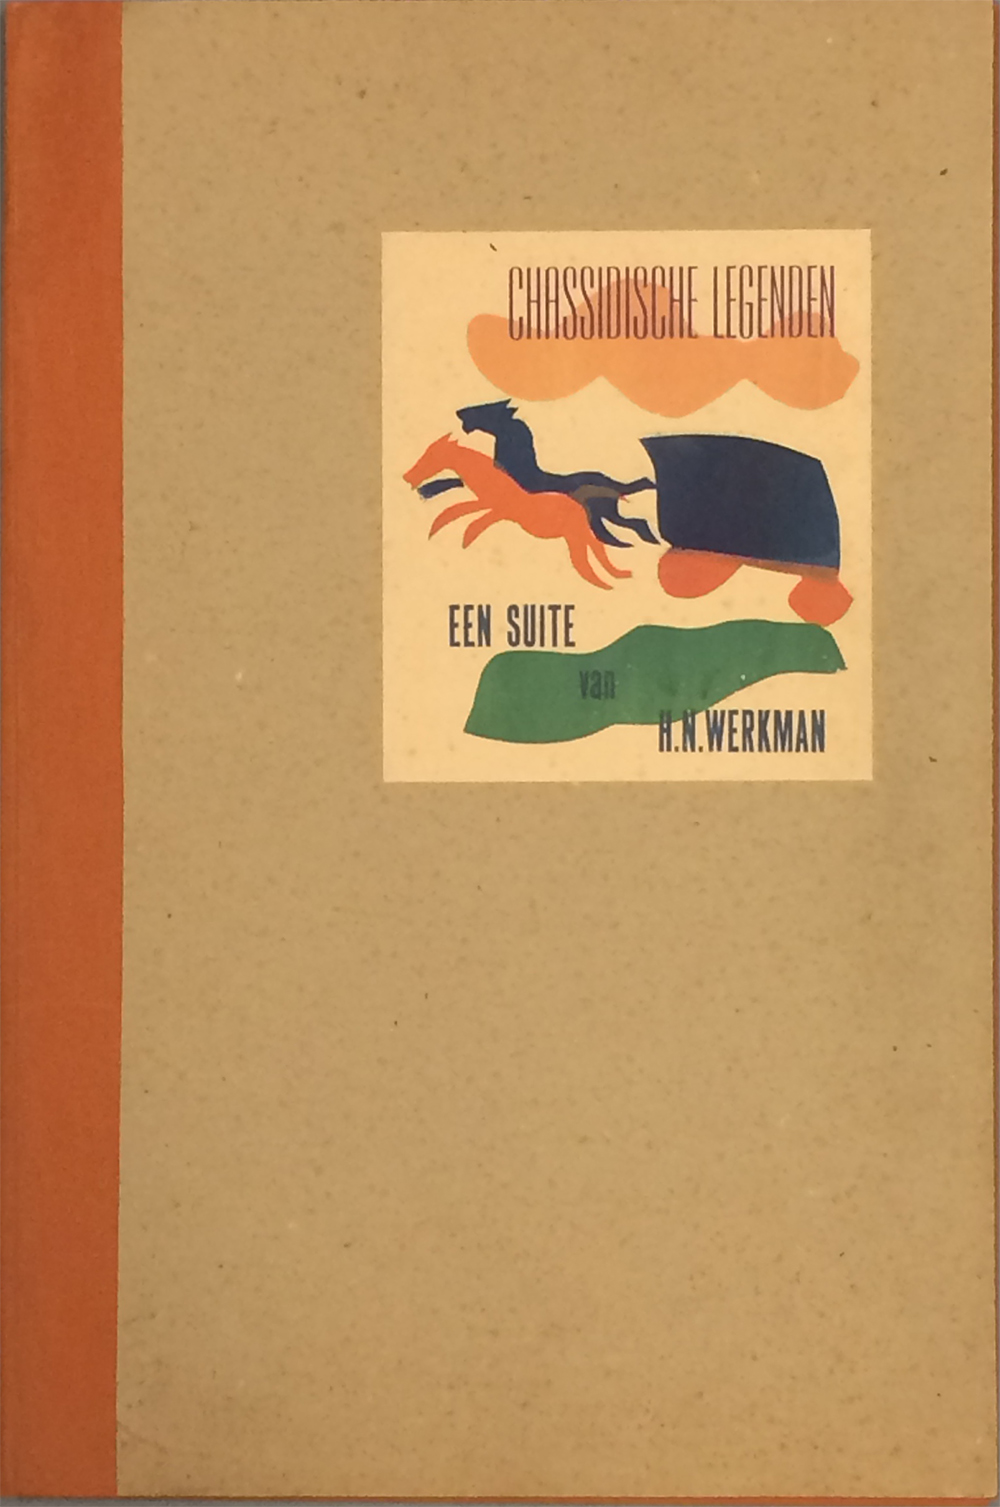 Portefeuille voor H.N. Werkman, Chassidische legenden (1) (1942)